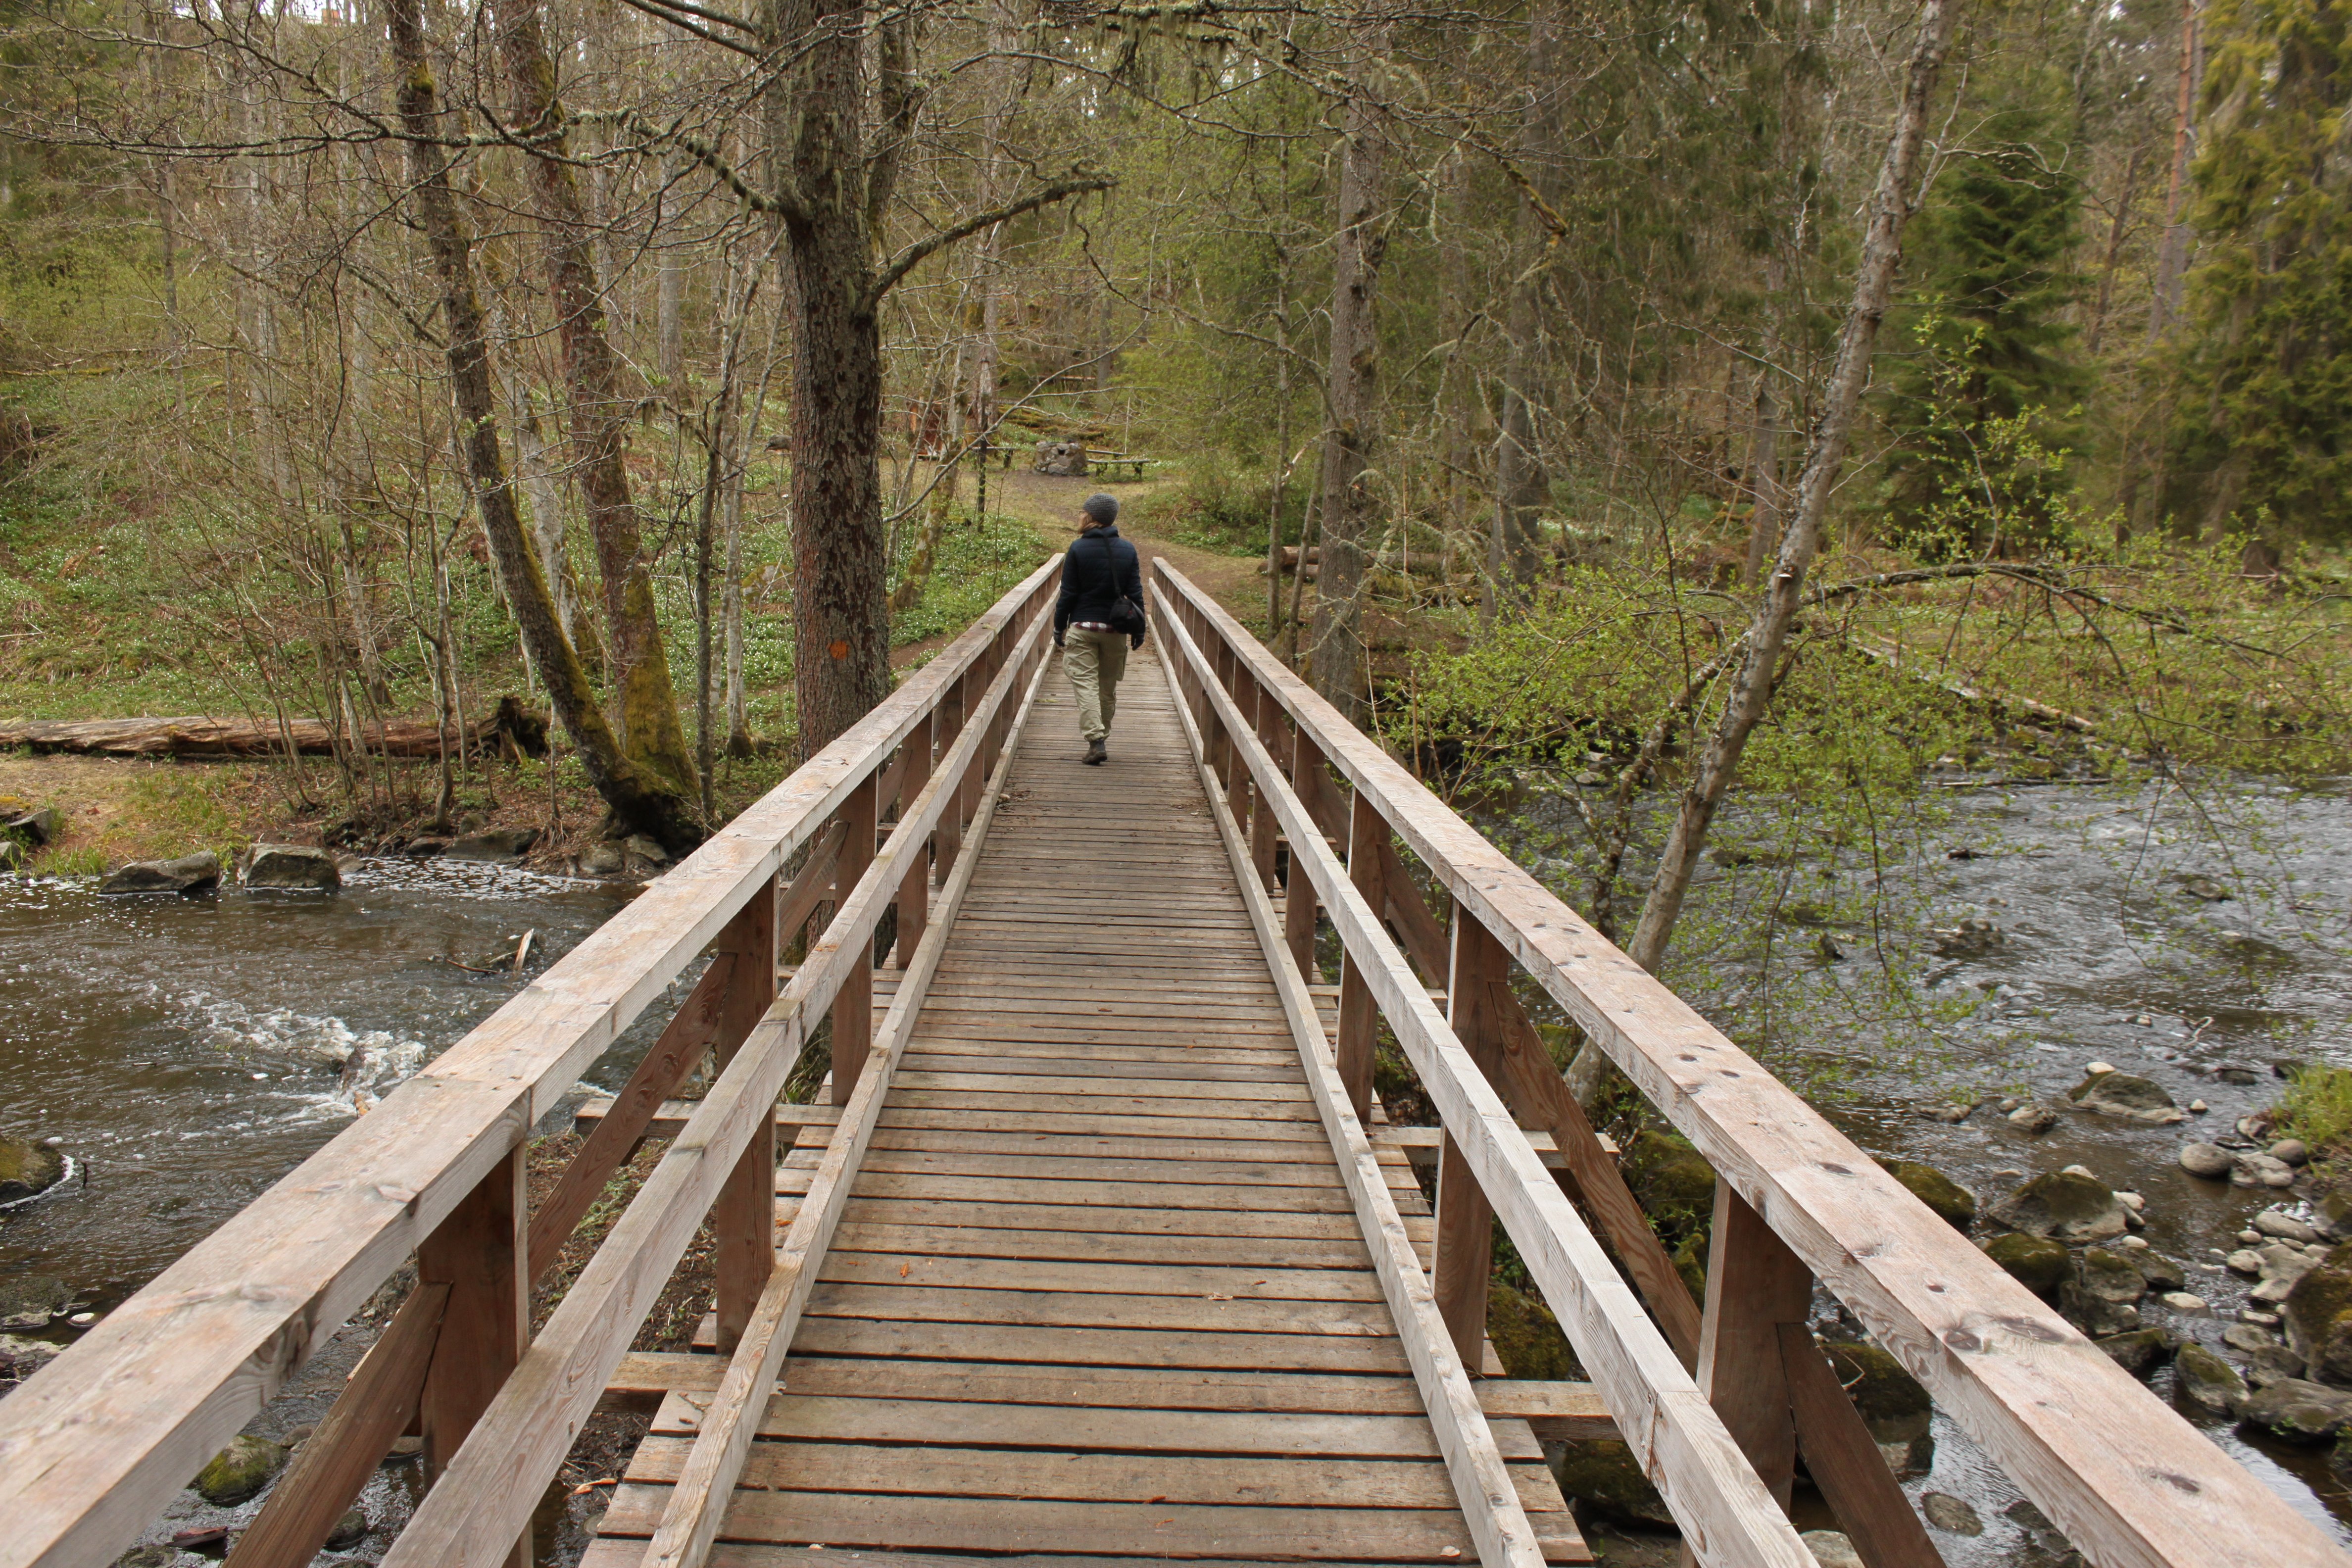 En träbro med handräcken på bägge sidorna går över en å i naturen. En person går över bron.